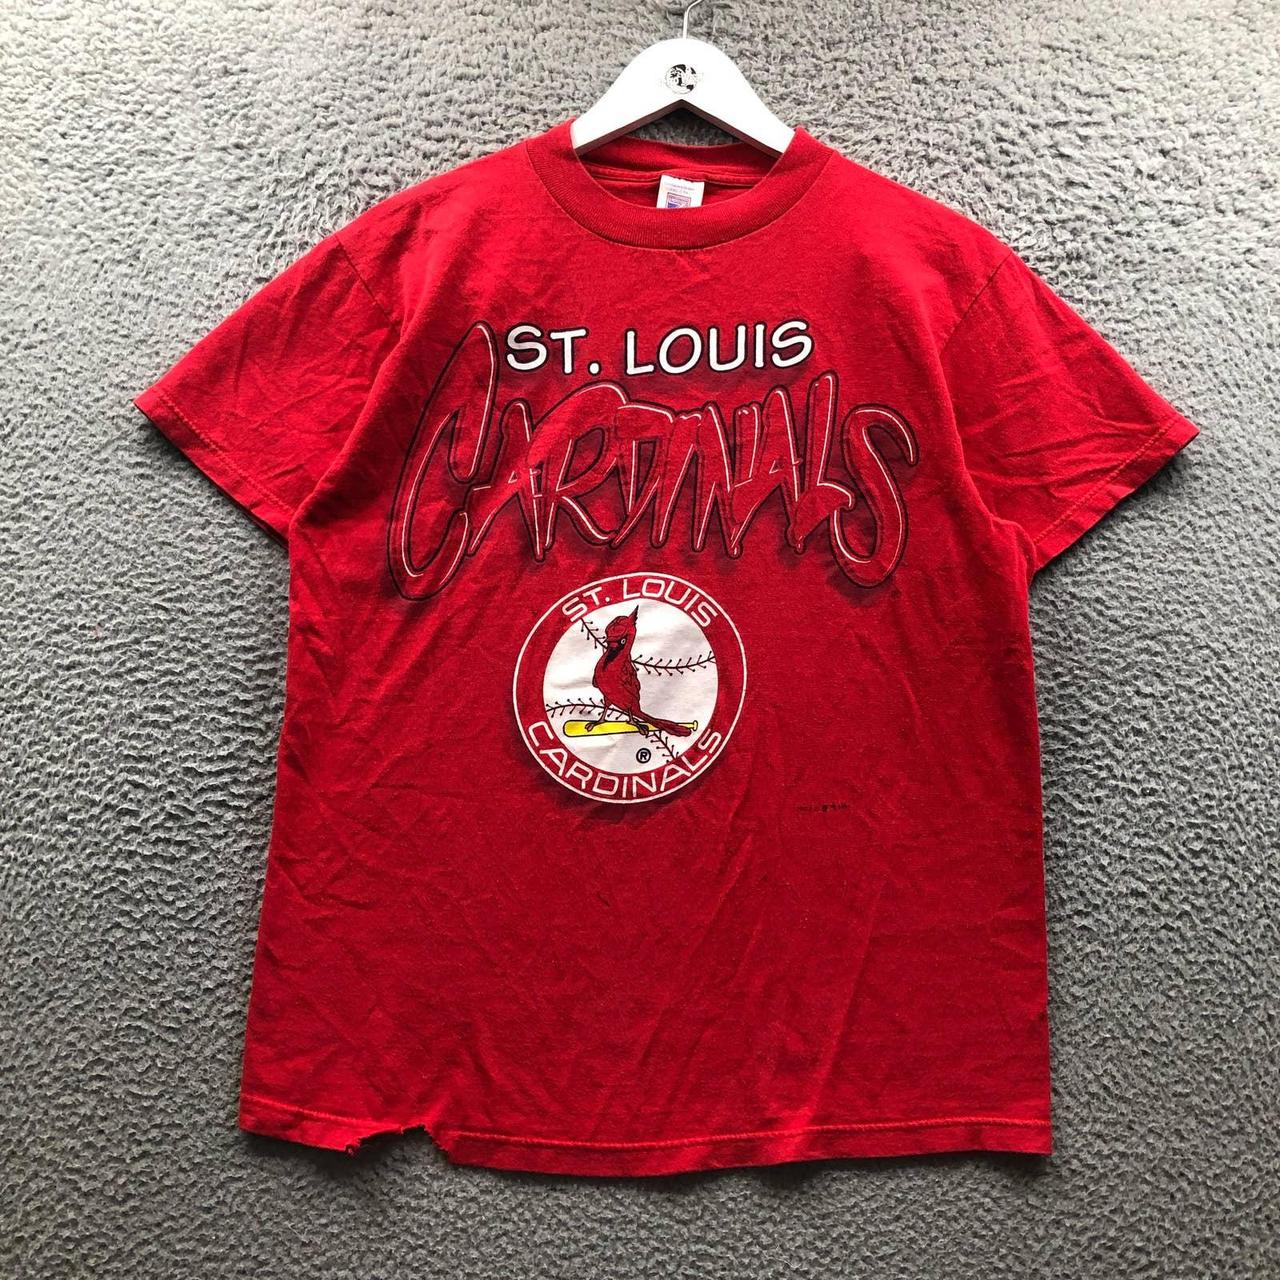 St. Louis Cardinals MBL Baseball T Shirt Grey Red - Depop